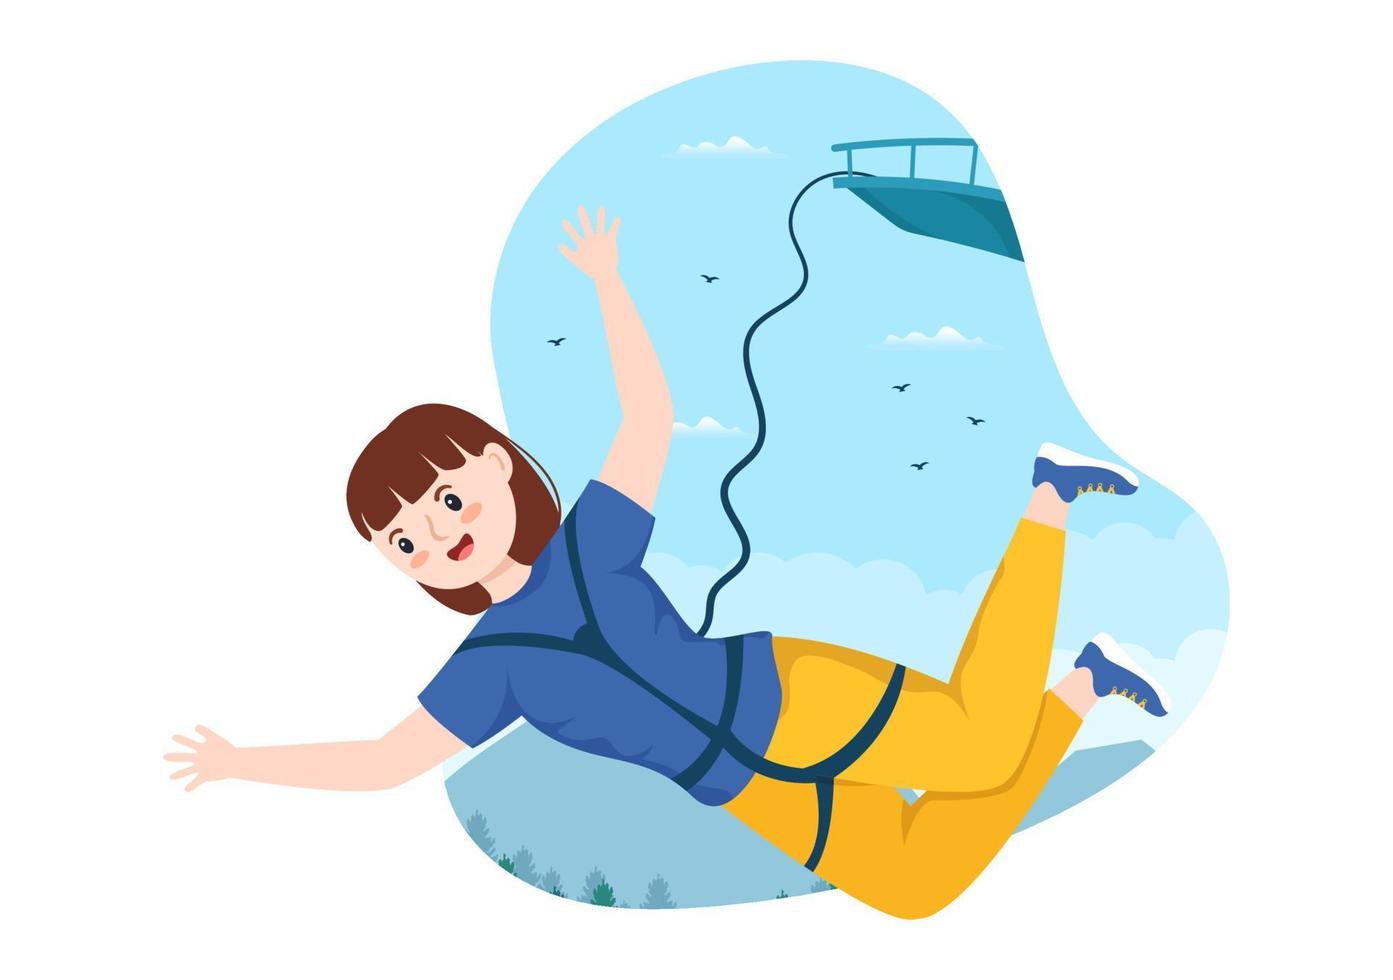 ilustración de puenting con una persona que lleva una cuerda elástica que cae saltando desde una altura en una plantilla vectorial de dibujos animados planos de deportes extremos vector